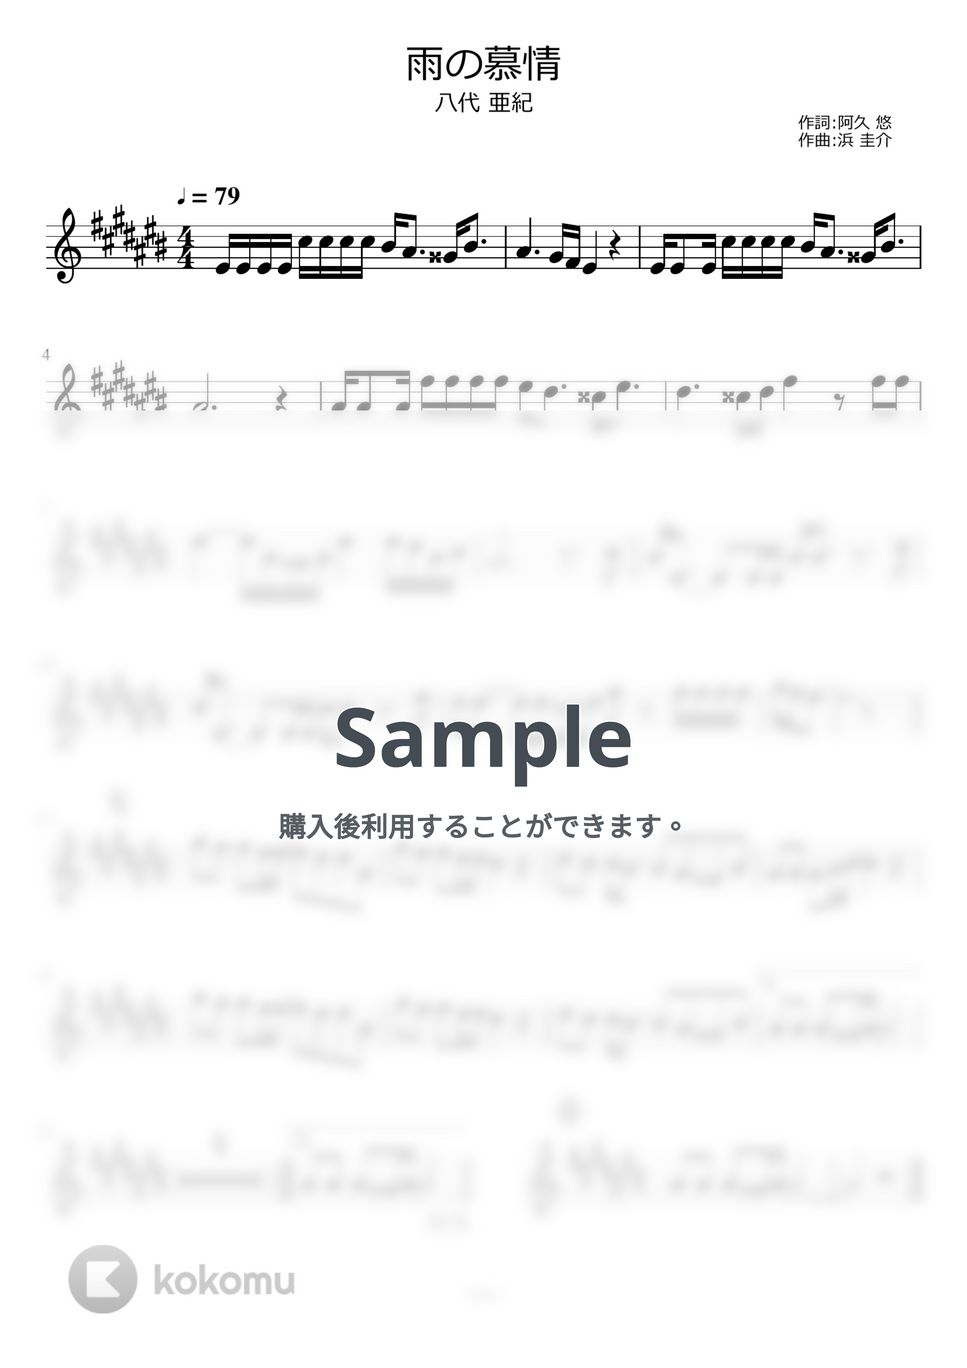 八代亜紀 - 雨の慕情 by ayako music school